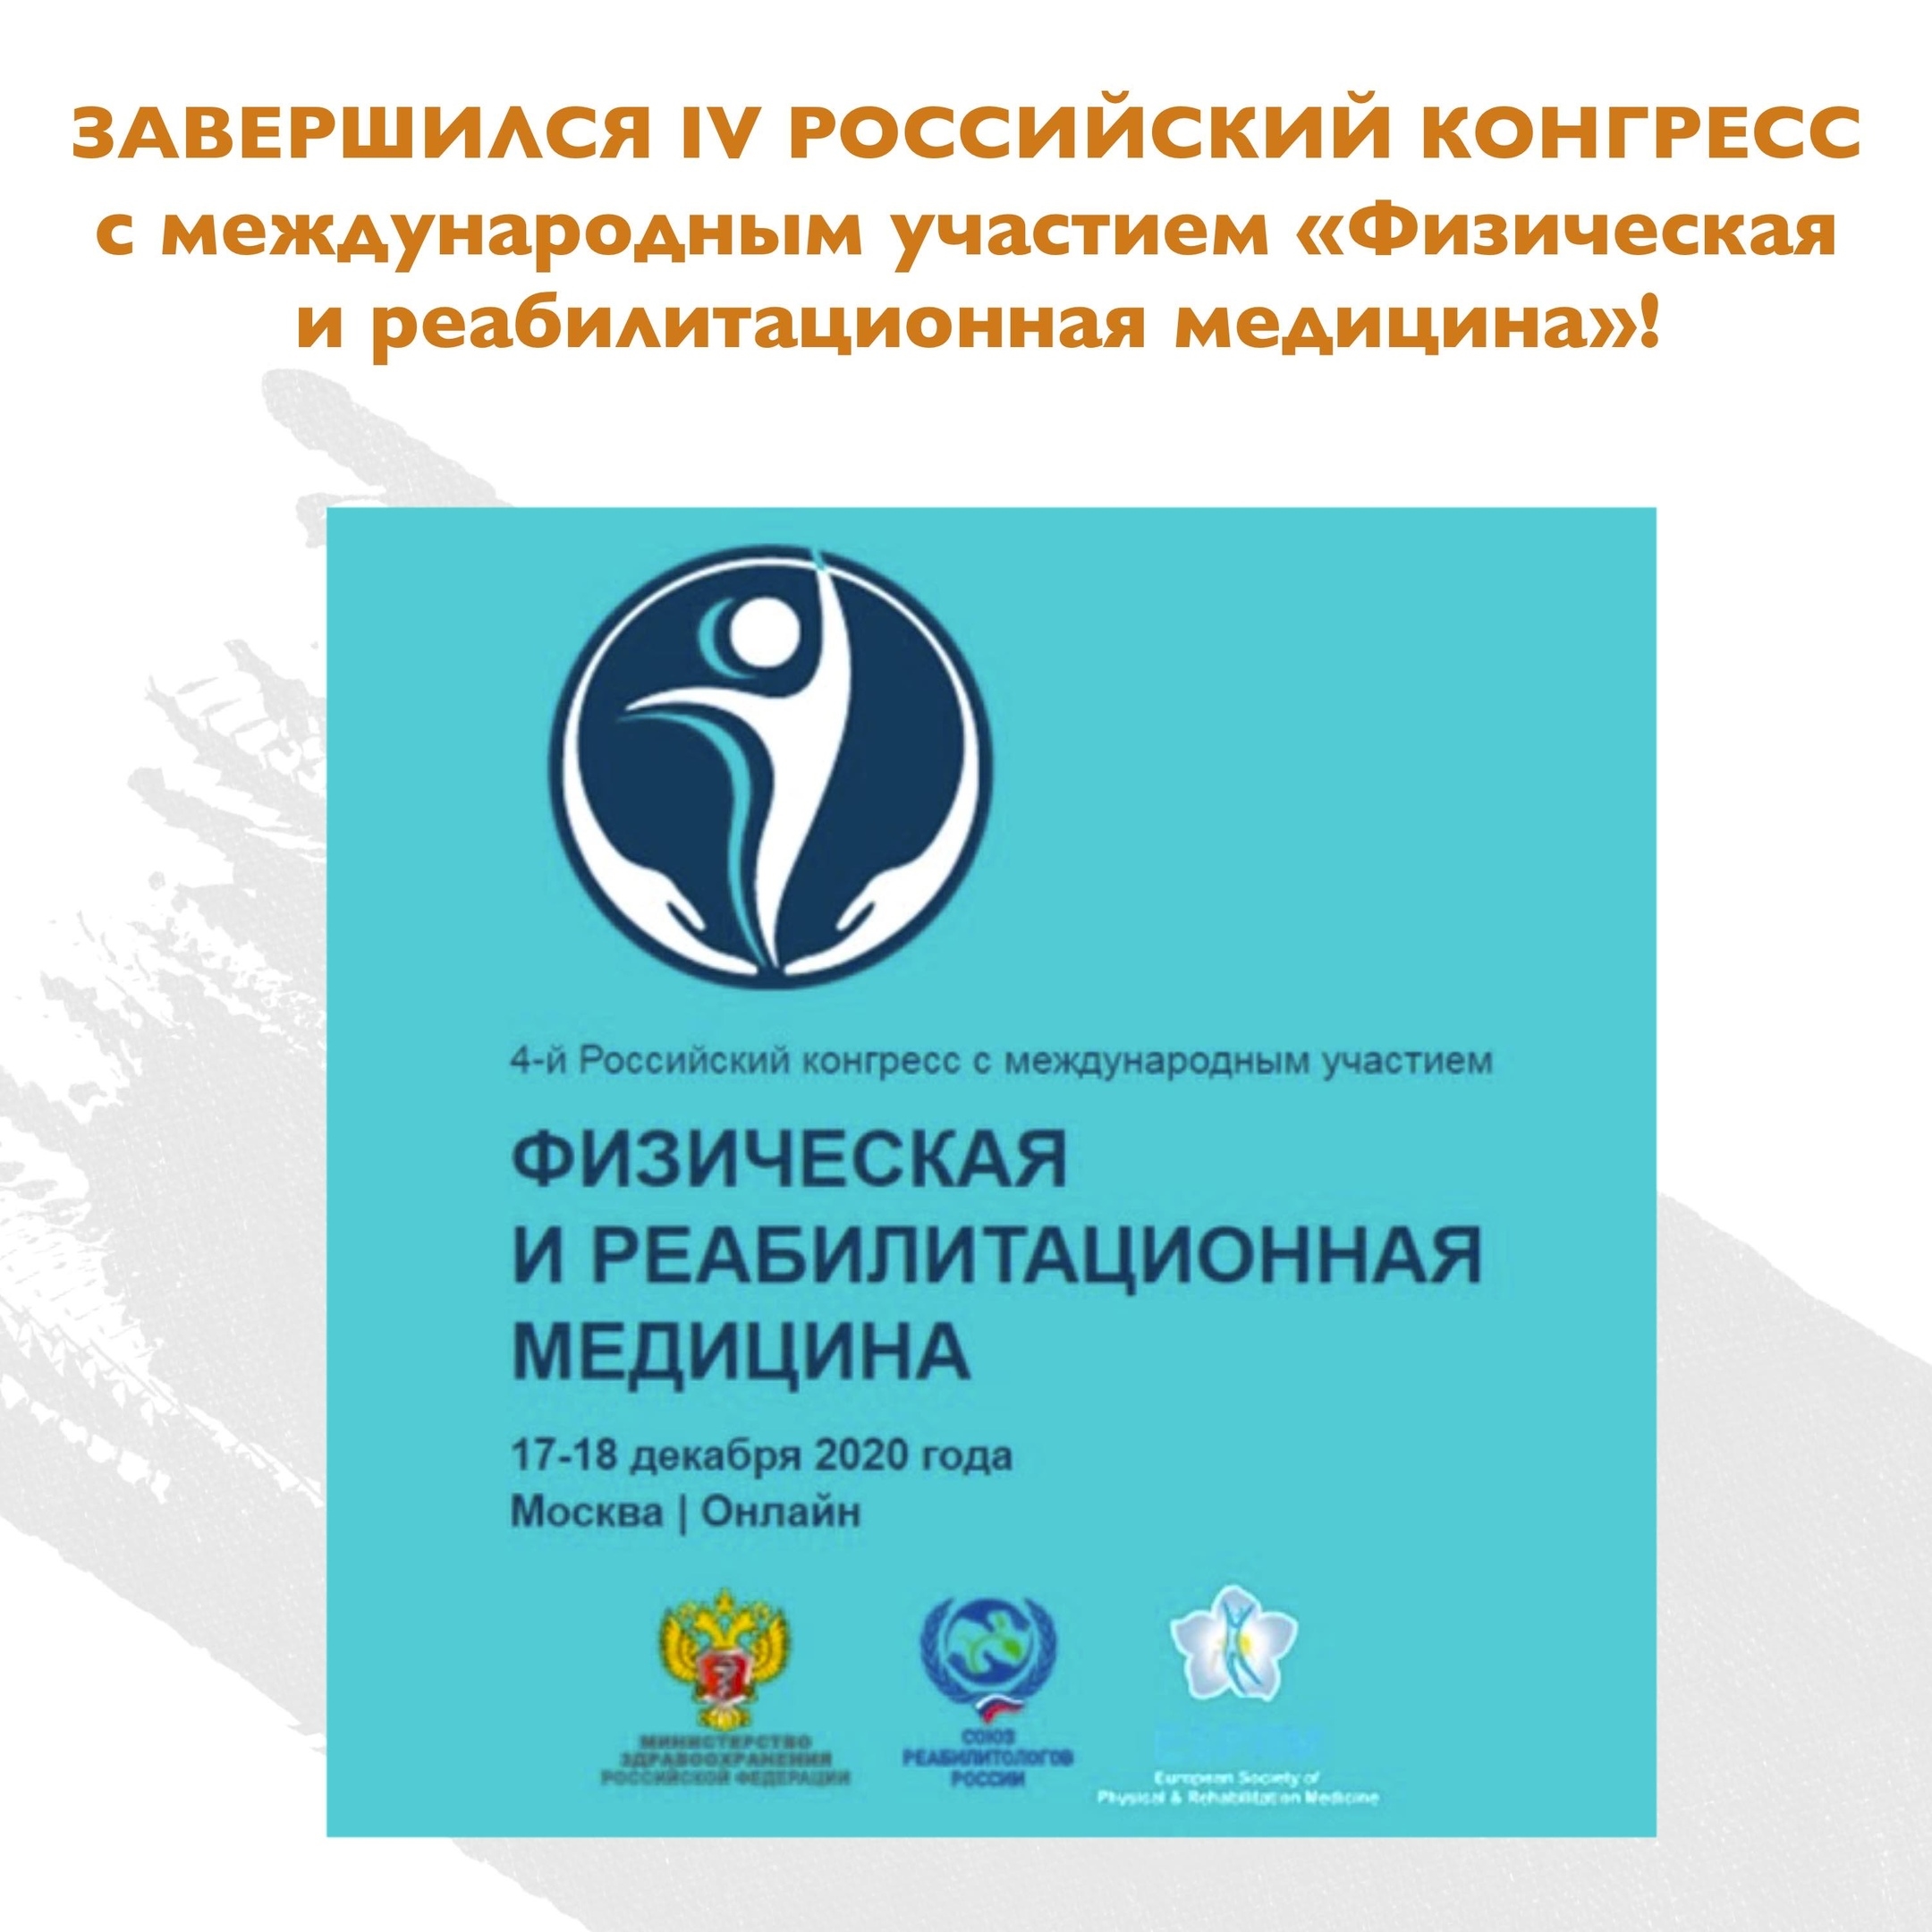 Завершился IV Российский конгресс с международным участием «Физическая и реабилитационная медицина»!